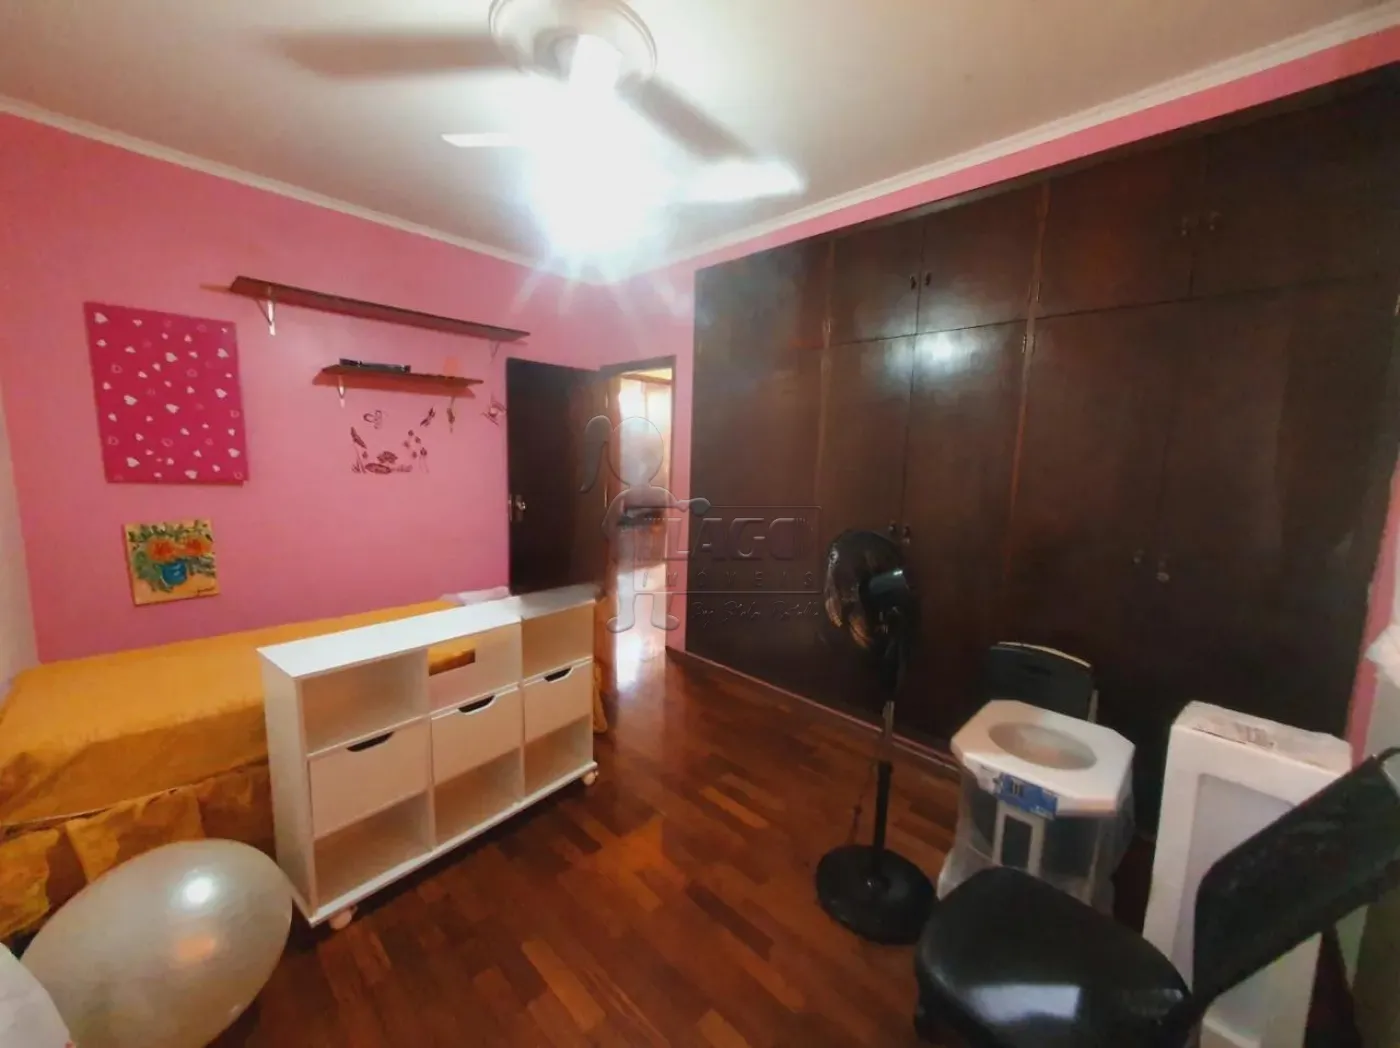 Comprar Casa / Padrão em Ribeirão Preto R$ 560.000,00 - Foto 9